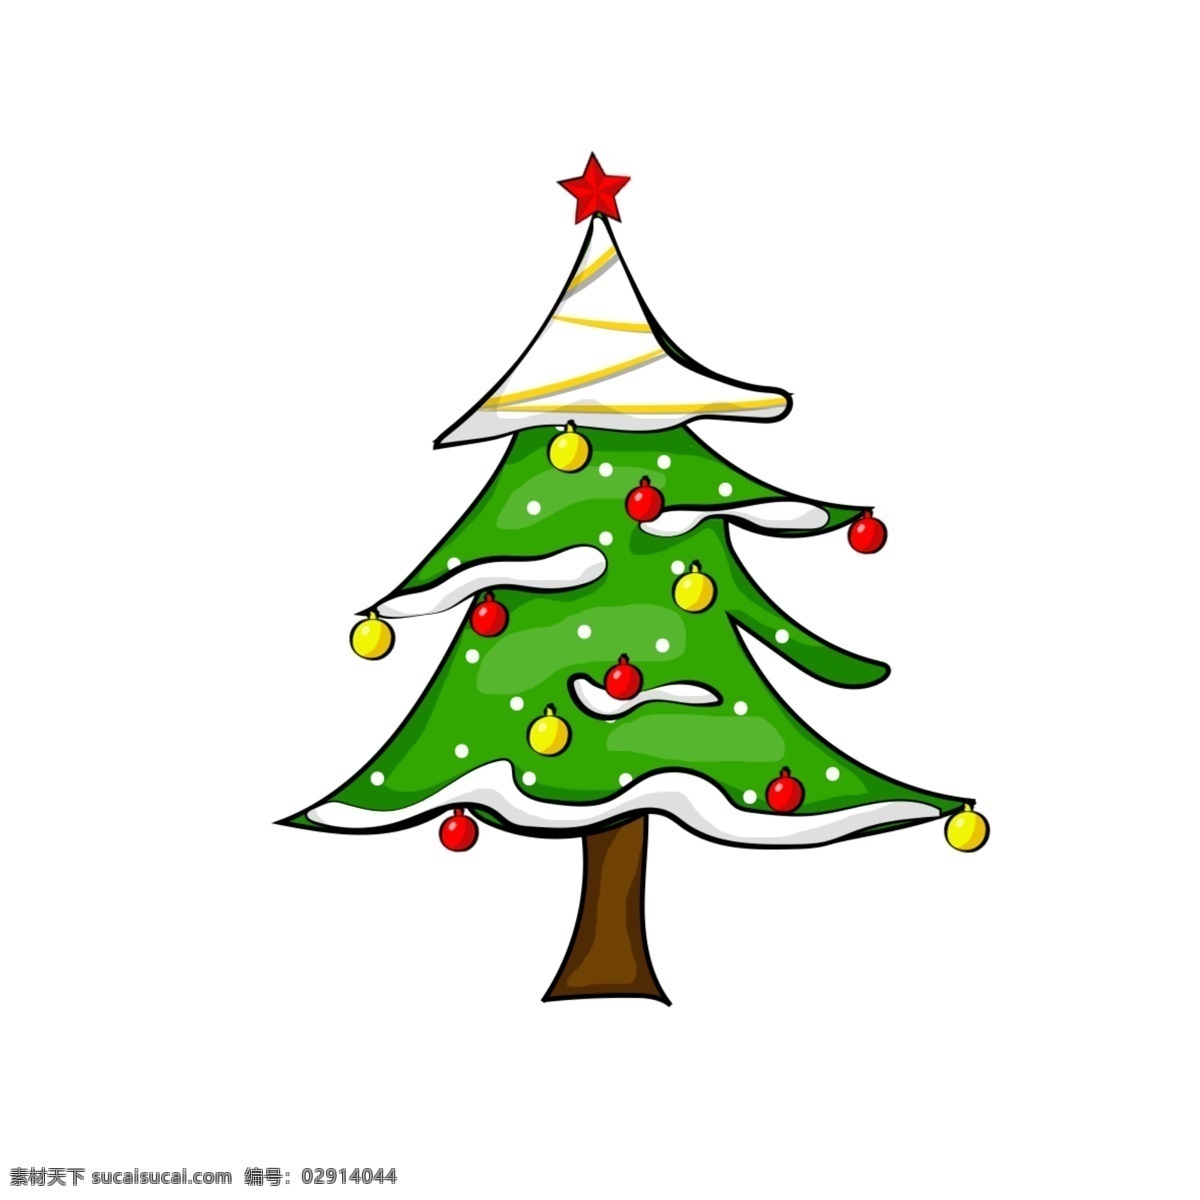 圣诞 矢量 圣诞树 装饰 元素 装饰物 矢量元素 节日 树